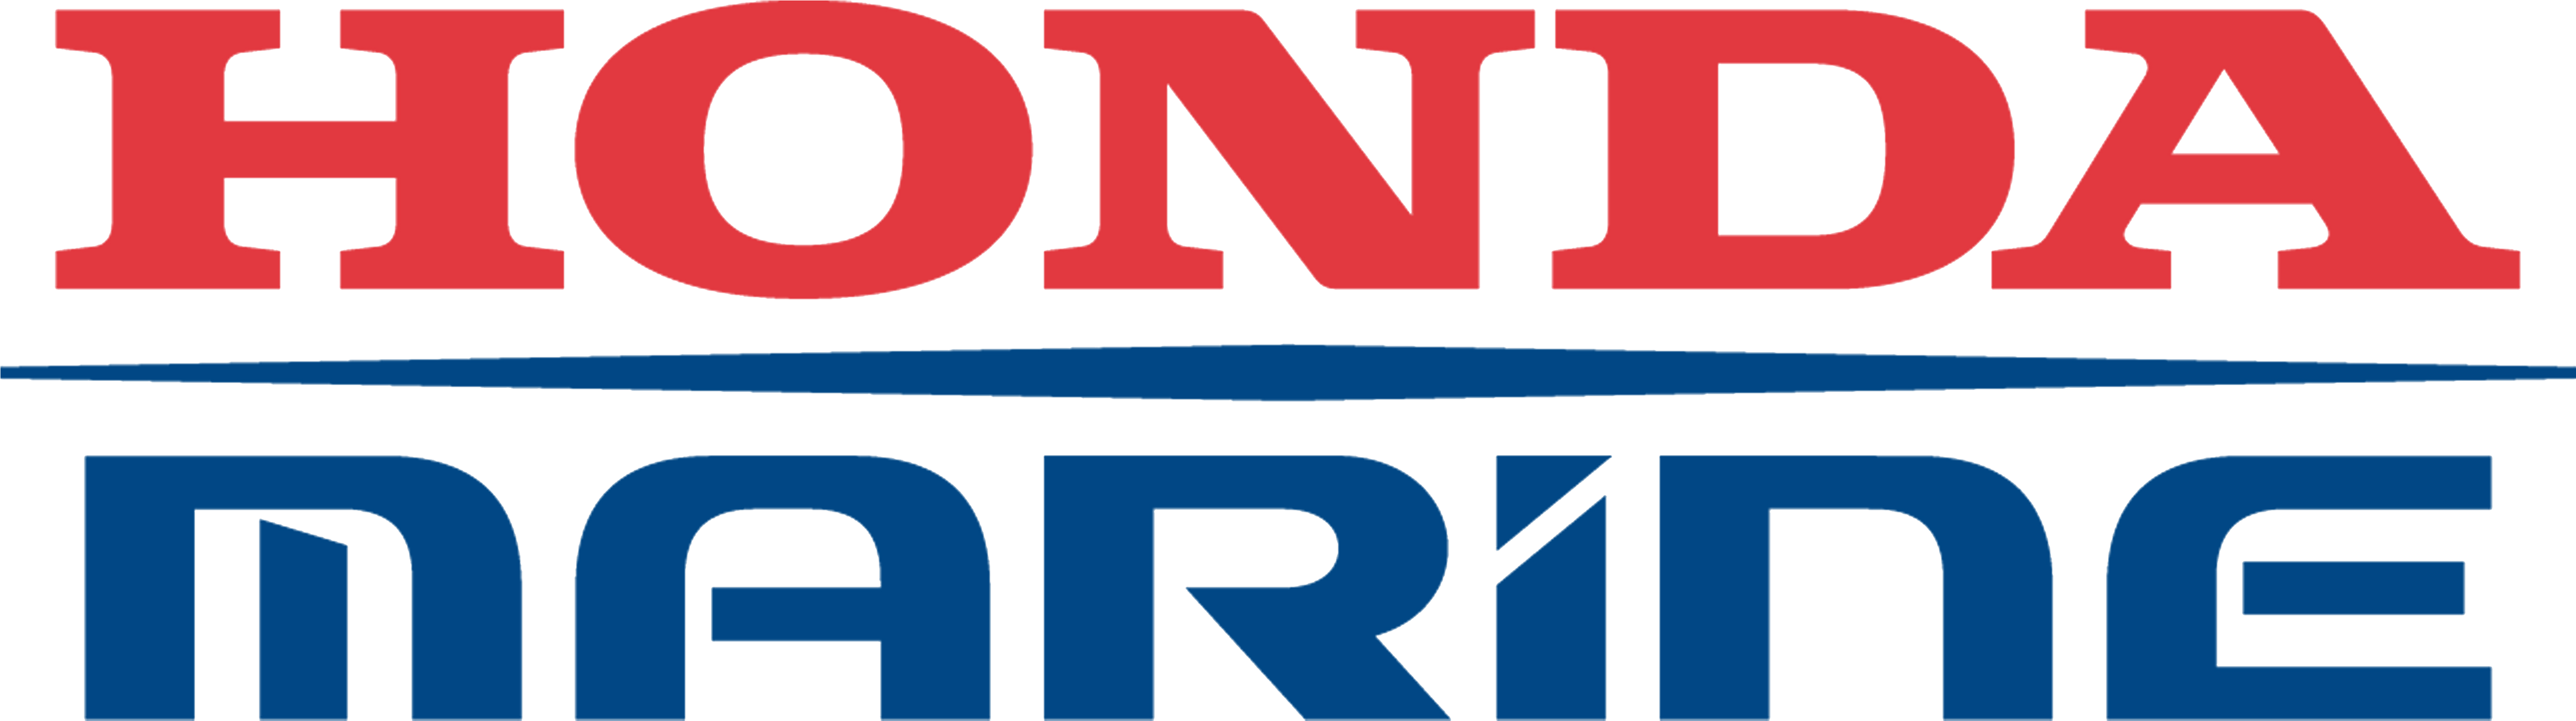 Honda - Honda Marine Logo Png (5400x4050), Png Download